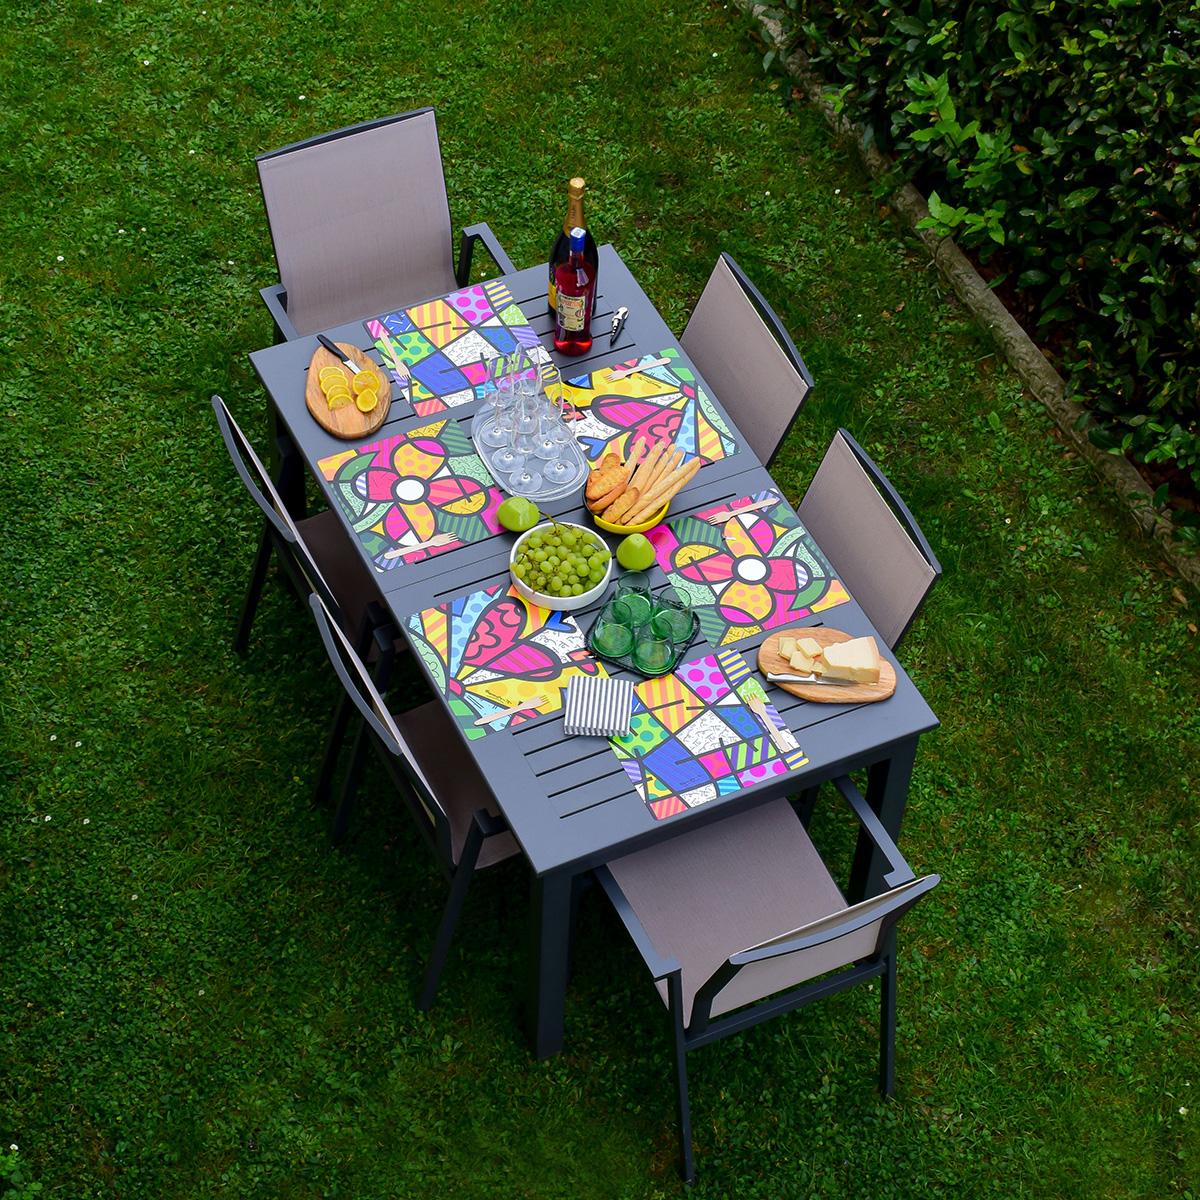 una tavola in giardino è apparecchiata con 6 tovagliette americane quadrate che riportano le immagini di Romero Britto